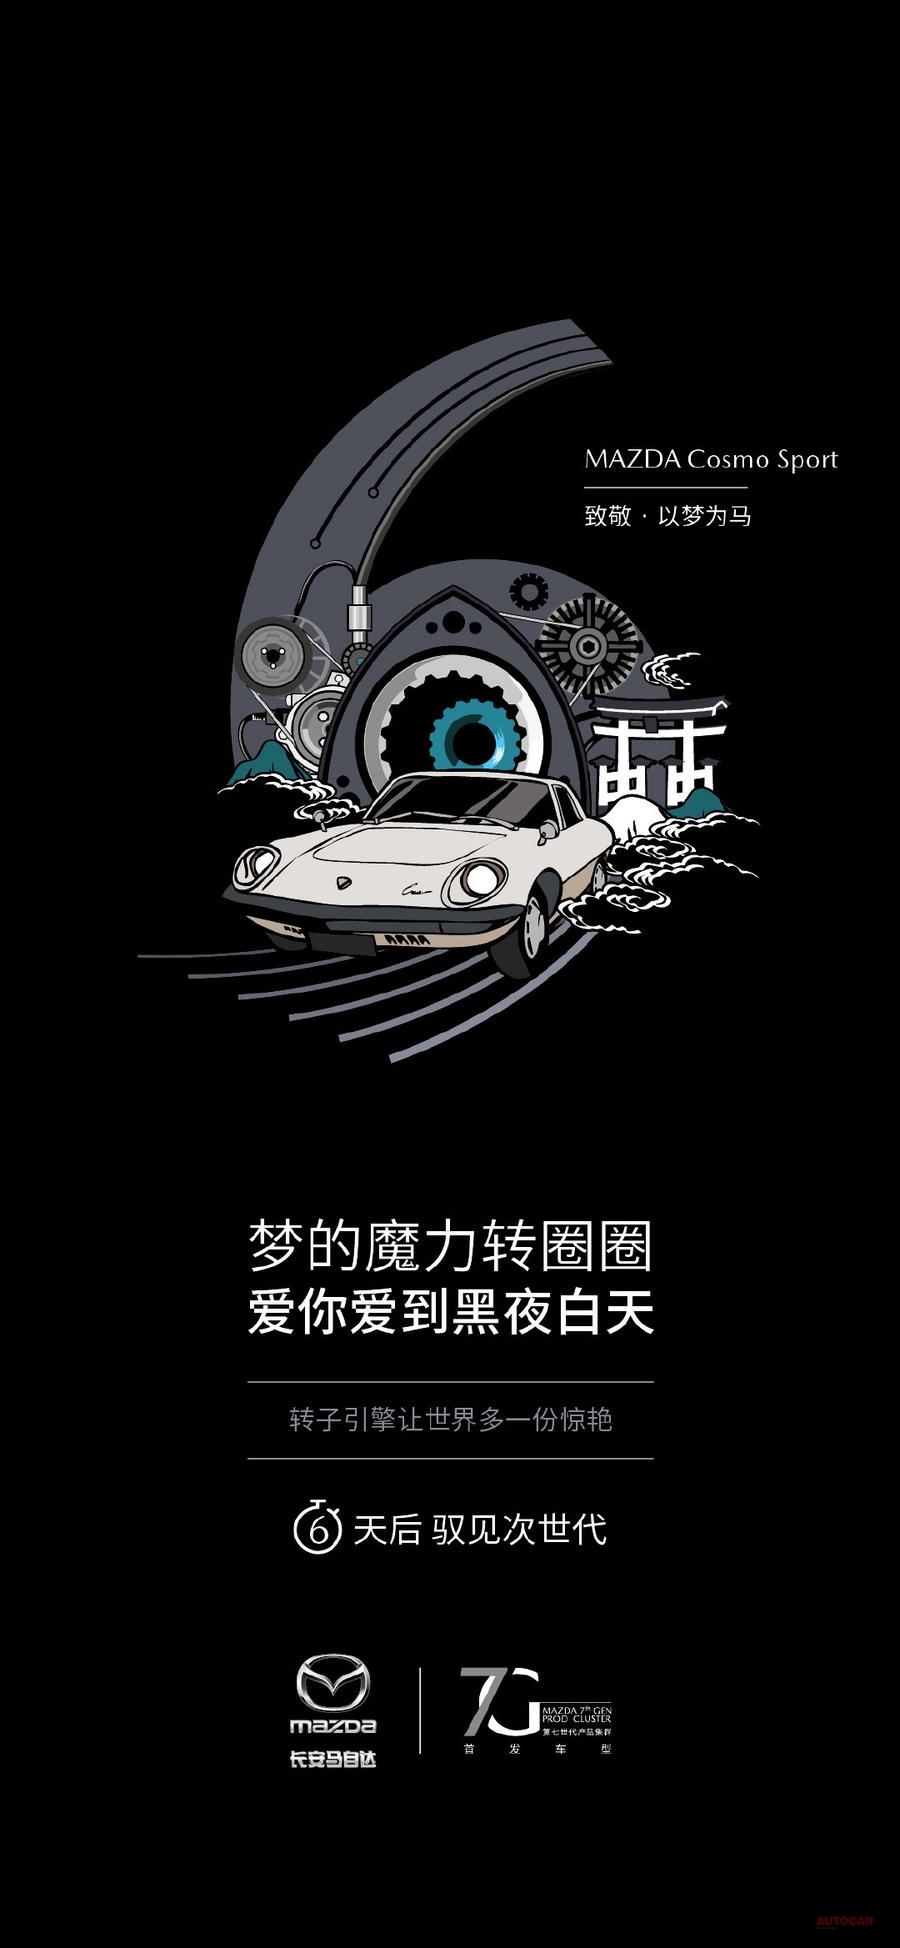 長安マツダが中国のSNS「ウェイボー」に、ロータリー復活を予告する画像を投稿している。「ロータリー・エンジンが世界をもっと美しくする」という言葉が添えられている。